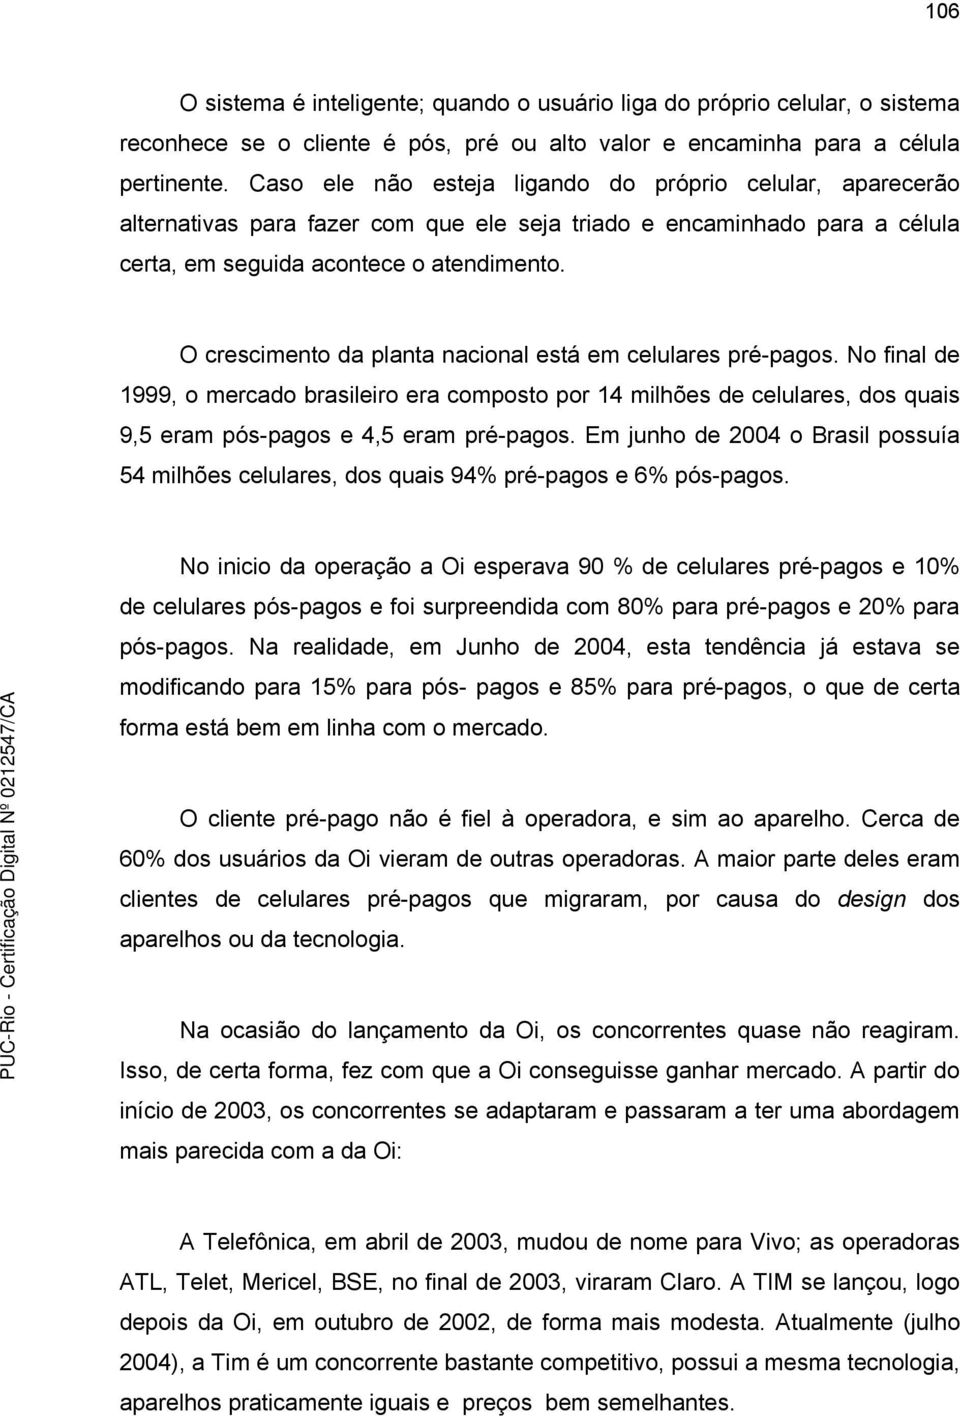 O crescimento da planta nacional está em celulares pré-pagos. No final de 1999, o mercado brasileiro era composto por 14 milhões de celulares, dos quais 9,5 eram pós-pagos e 4,5 eram pré-pagos.